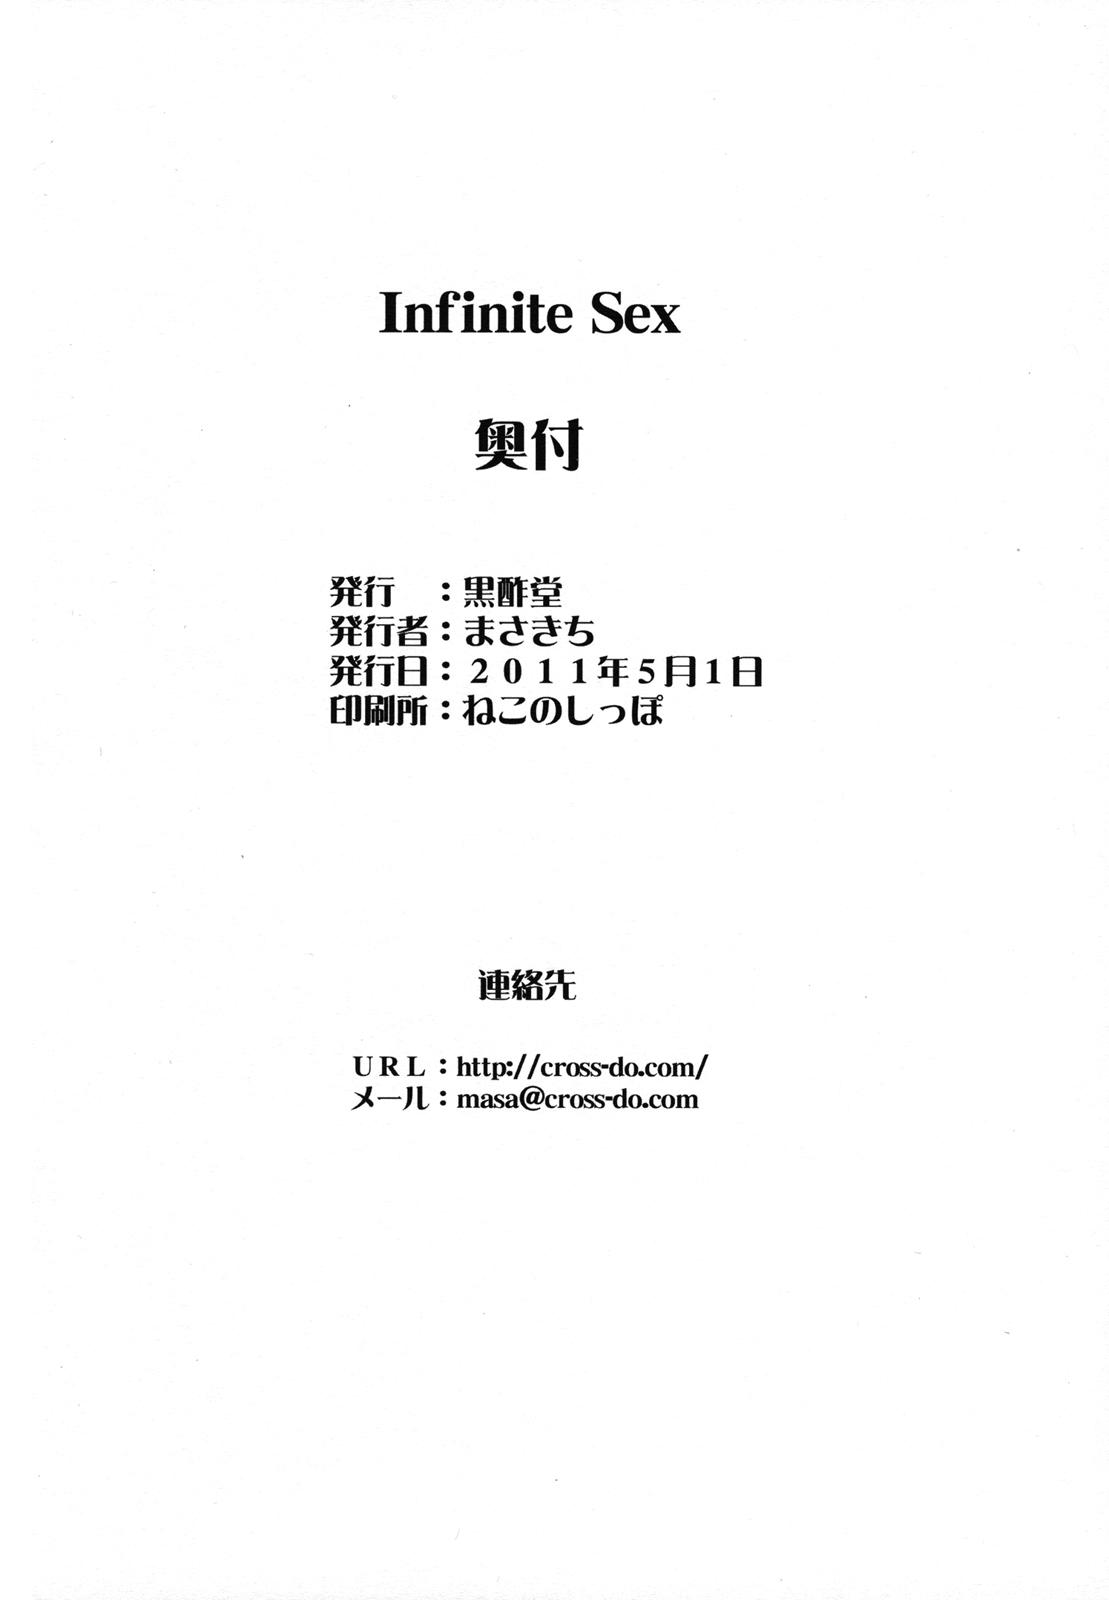 Infinite Sex 20